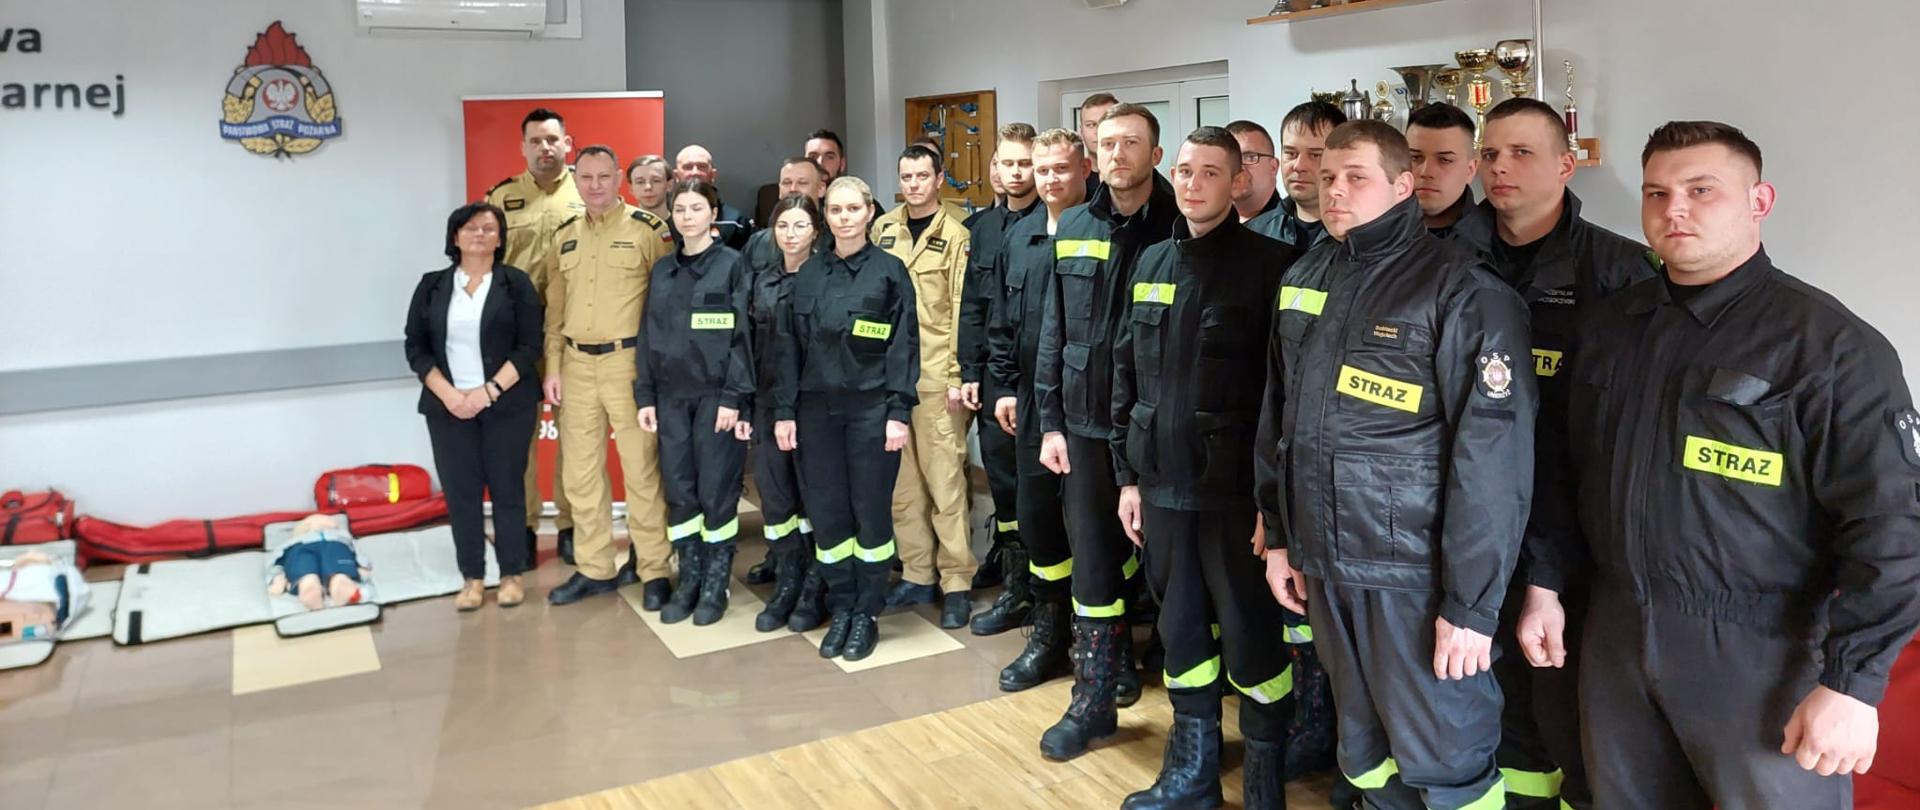 Pierwsze na terenie województwa mazowieckiego szkolenie z zakresu Kwalifikowanej Pierwszej Pomocy dla strażaków ratowników jednostek OSP